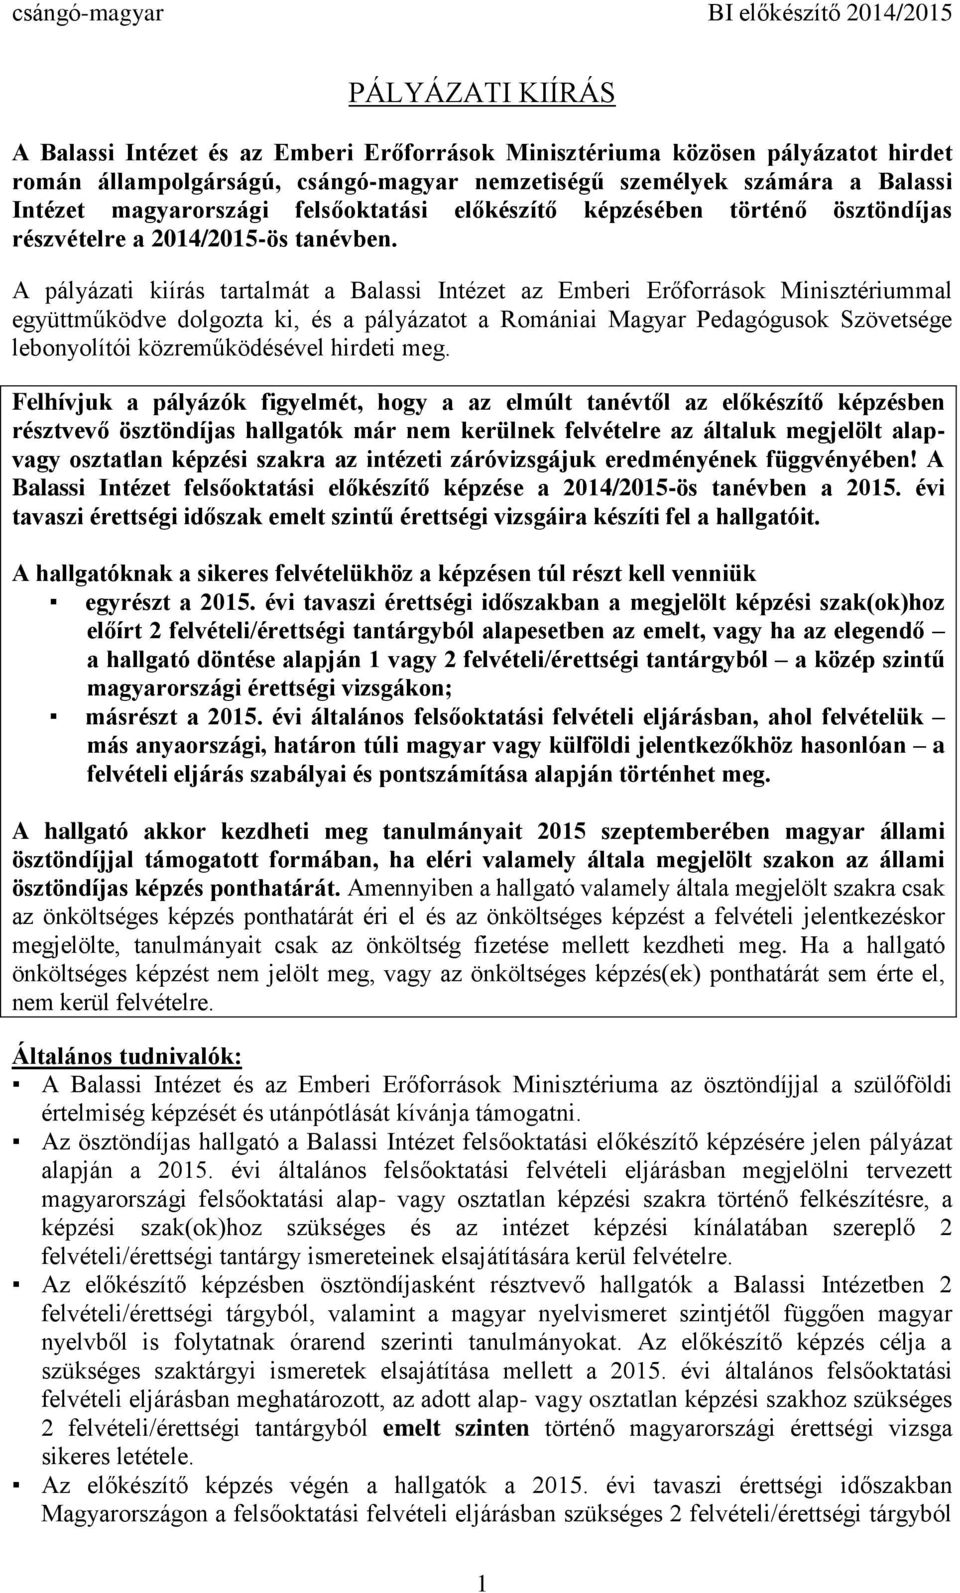 A pályázati kiírás tartalmát a Balassi Intézet az Emberi Erőforrások Minisztériummal együttműködve dolgozta ki, és a pályázatot a Romániai Magyar Pedagógusok Szövetsége lebonyolítói közreműködésével